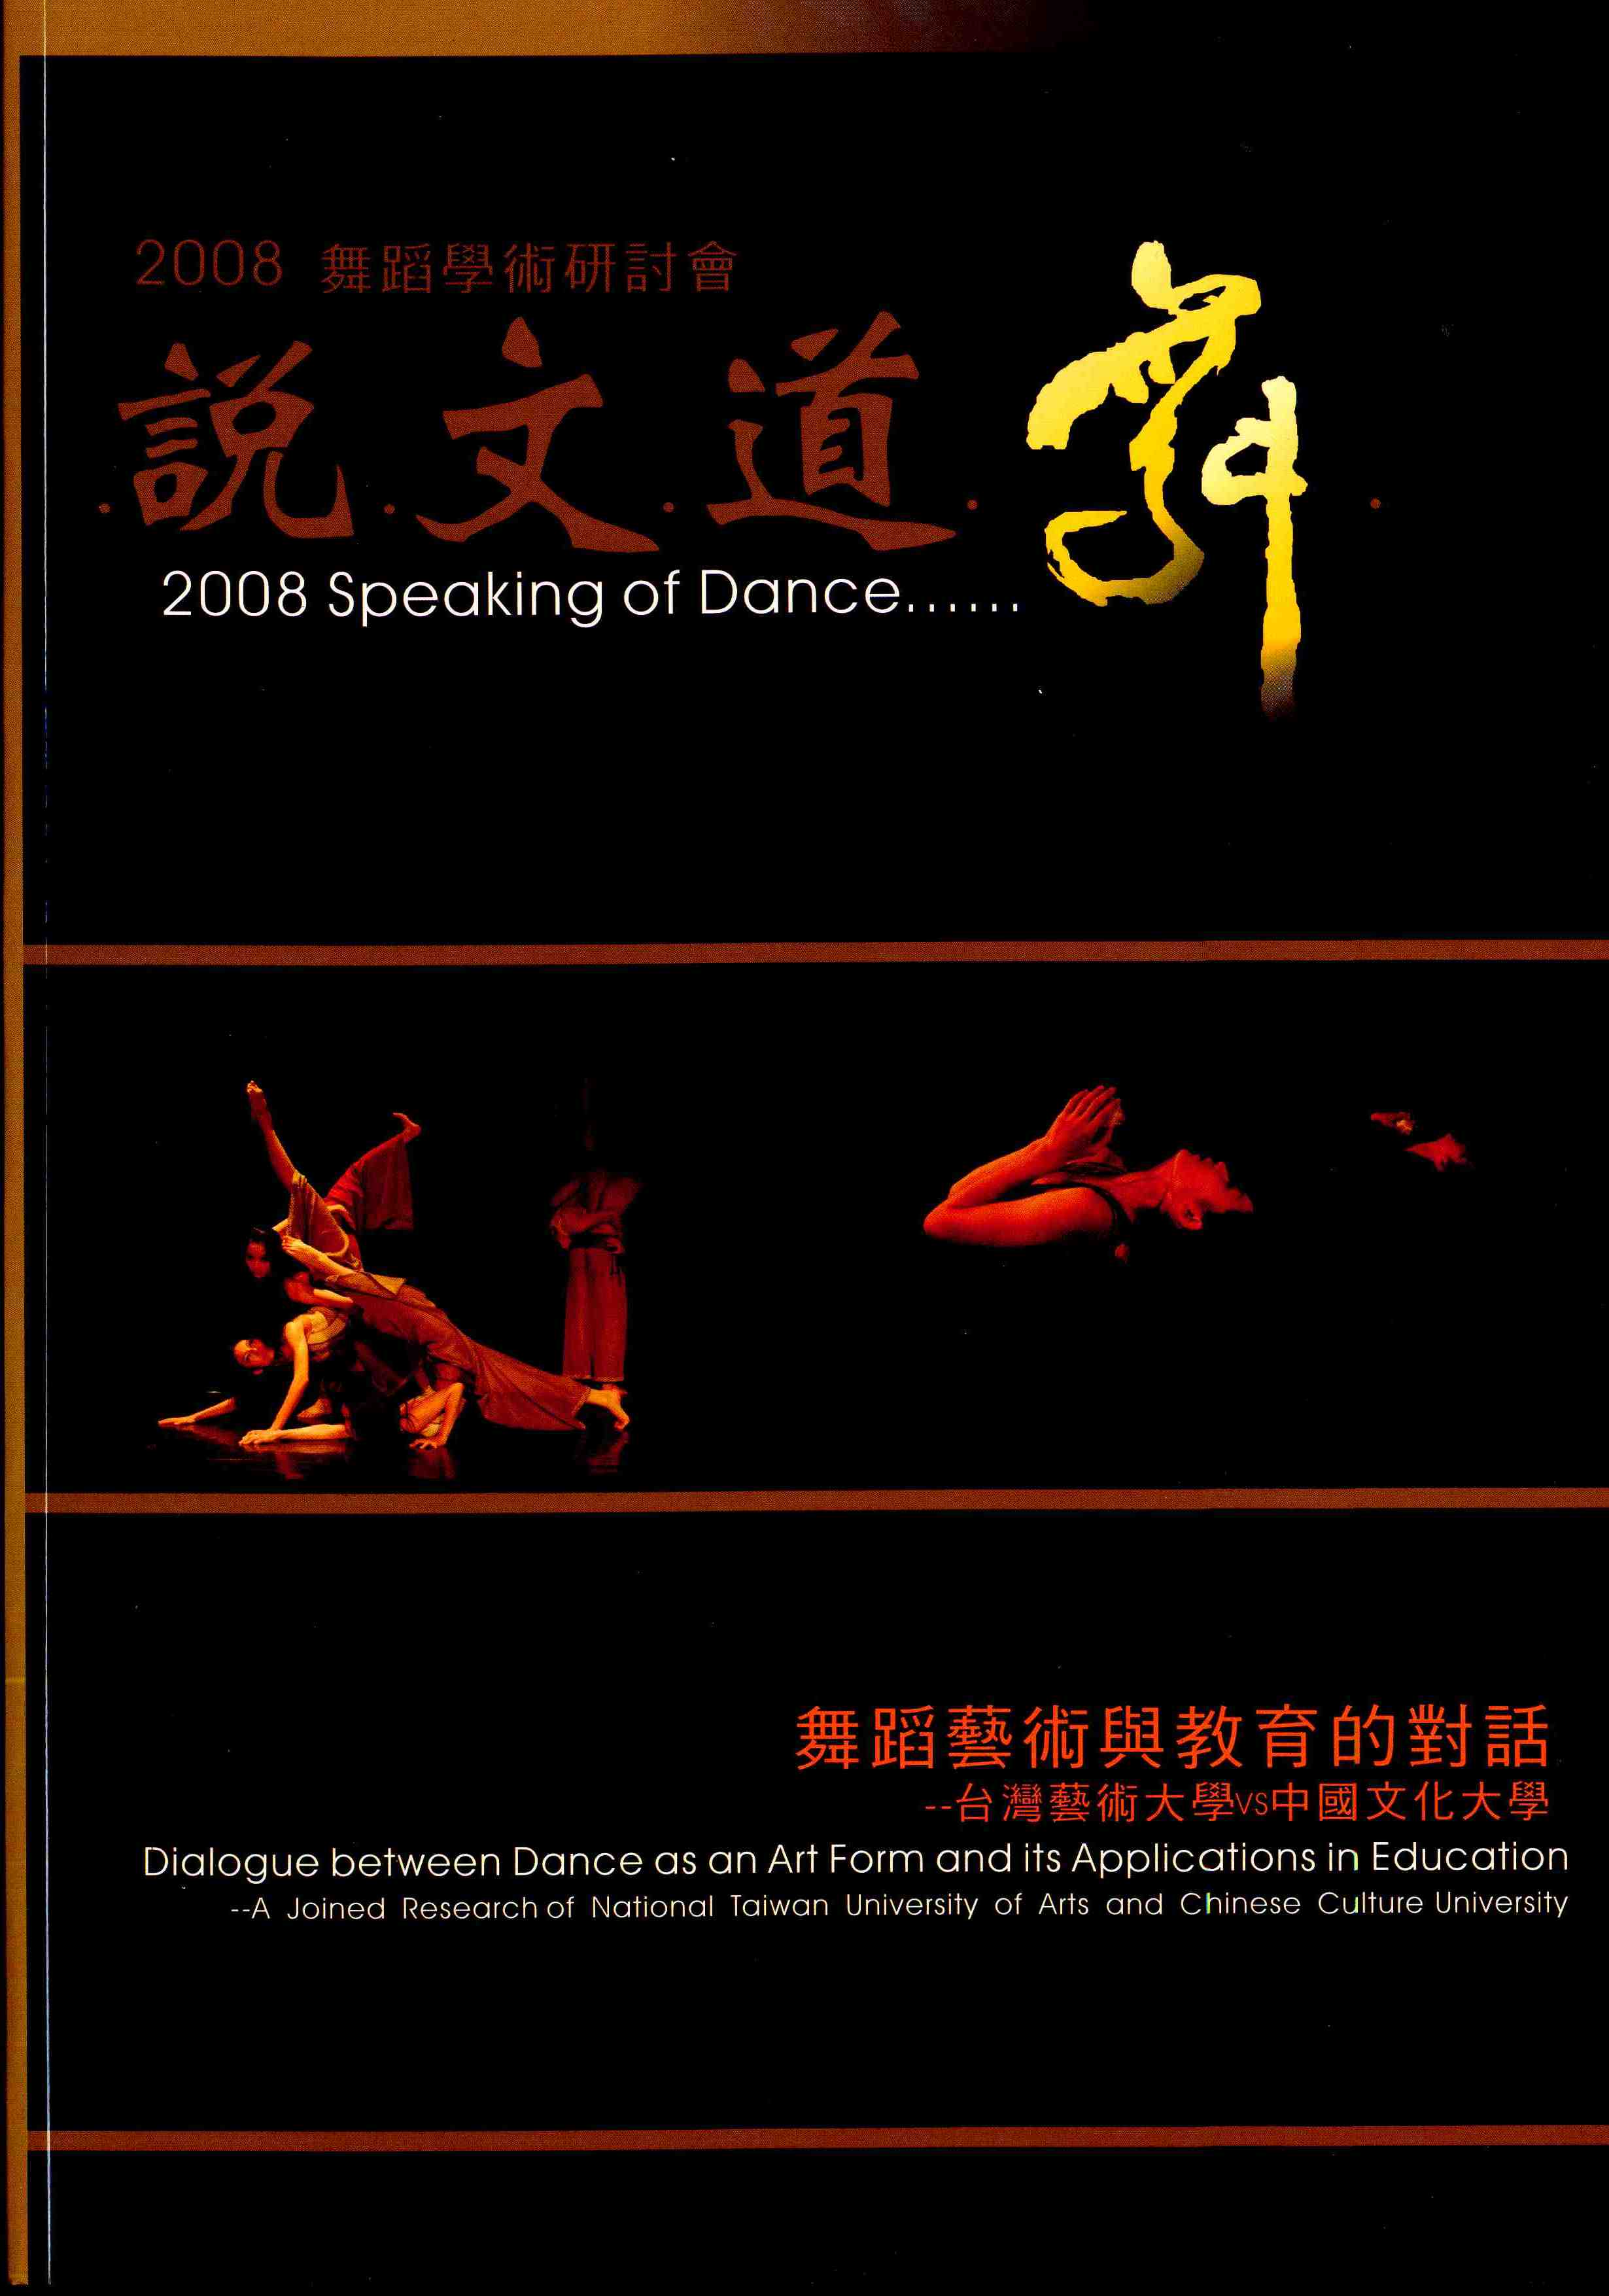 2008說文道舞-舞蹈學術研討會『舞蹈藝術與教育的對話』